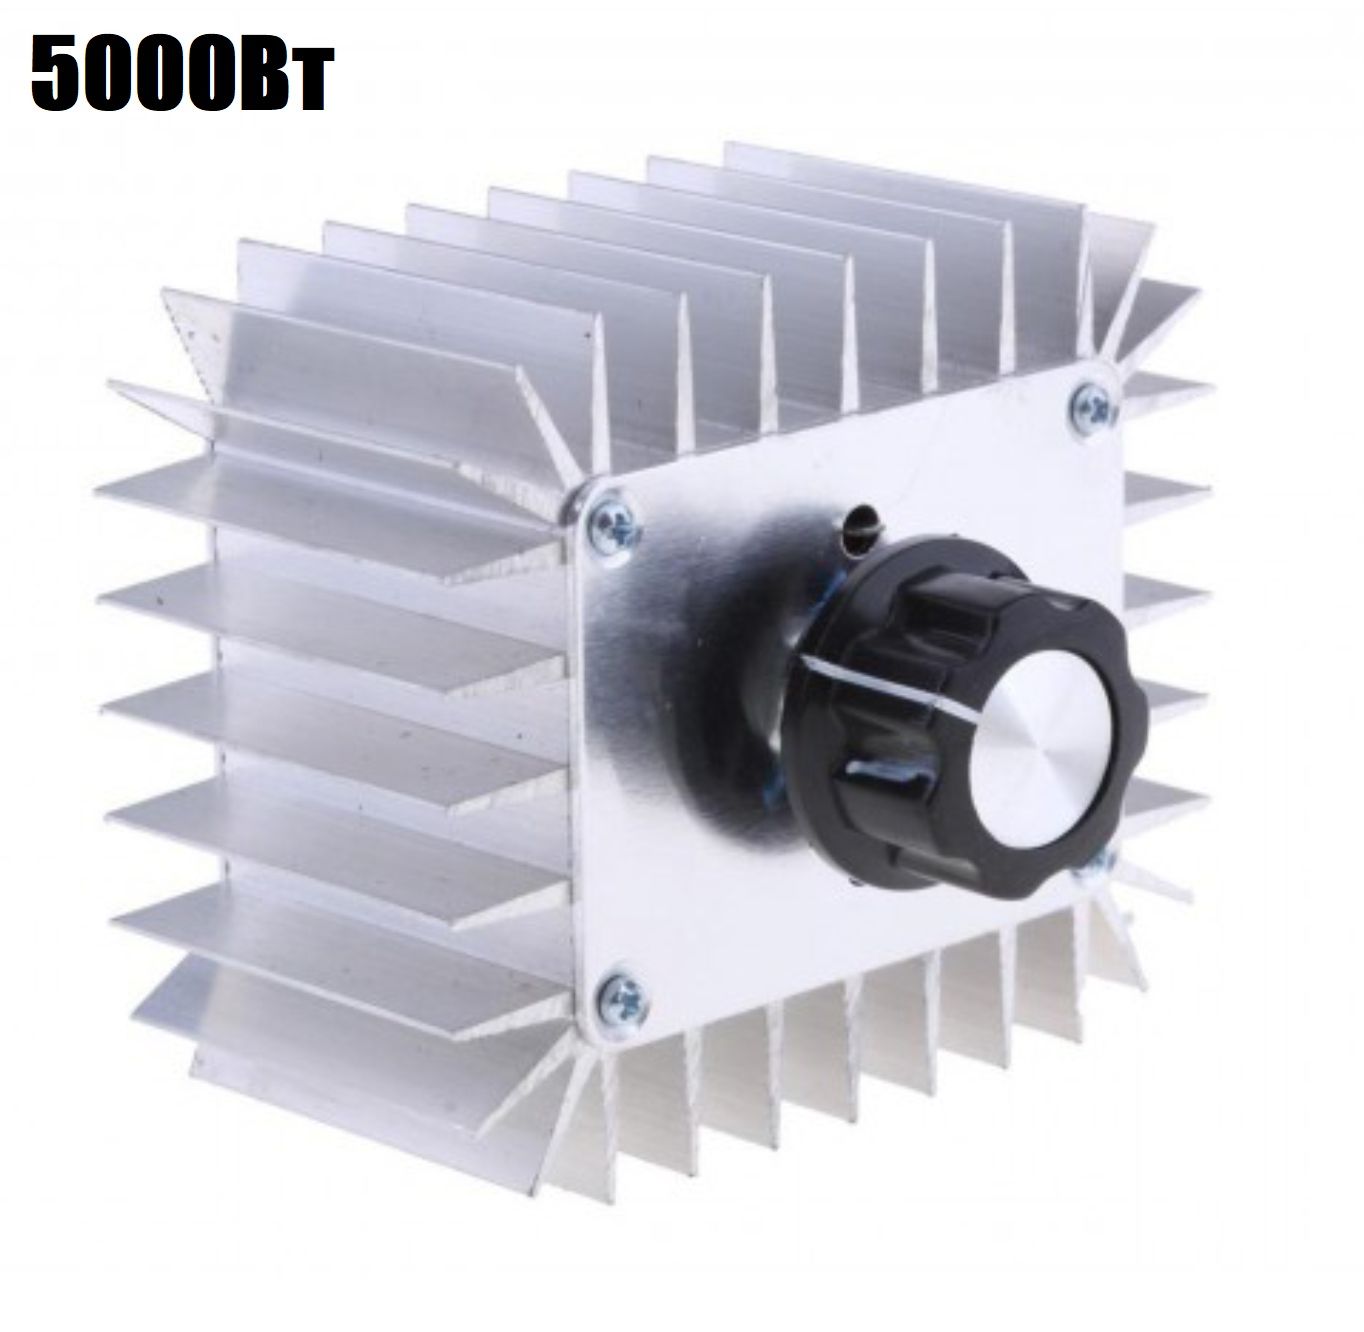 Симисторный 9V регулятор переменного напряжения, температуры, света, скорости 5000Вт (У)